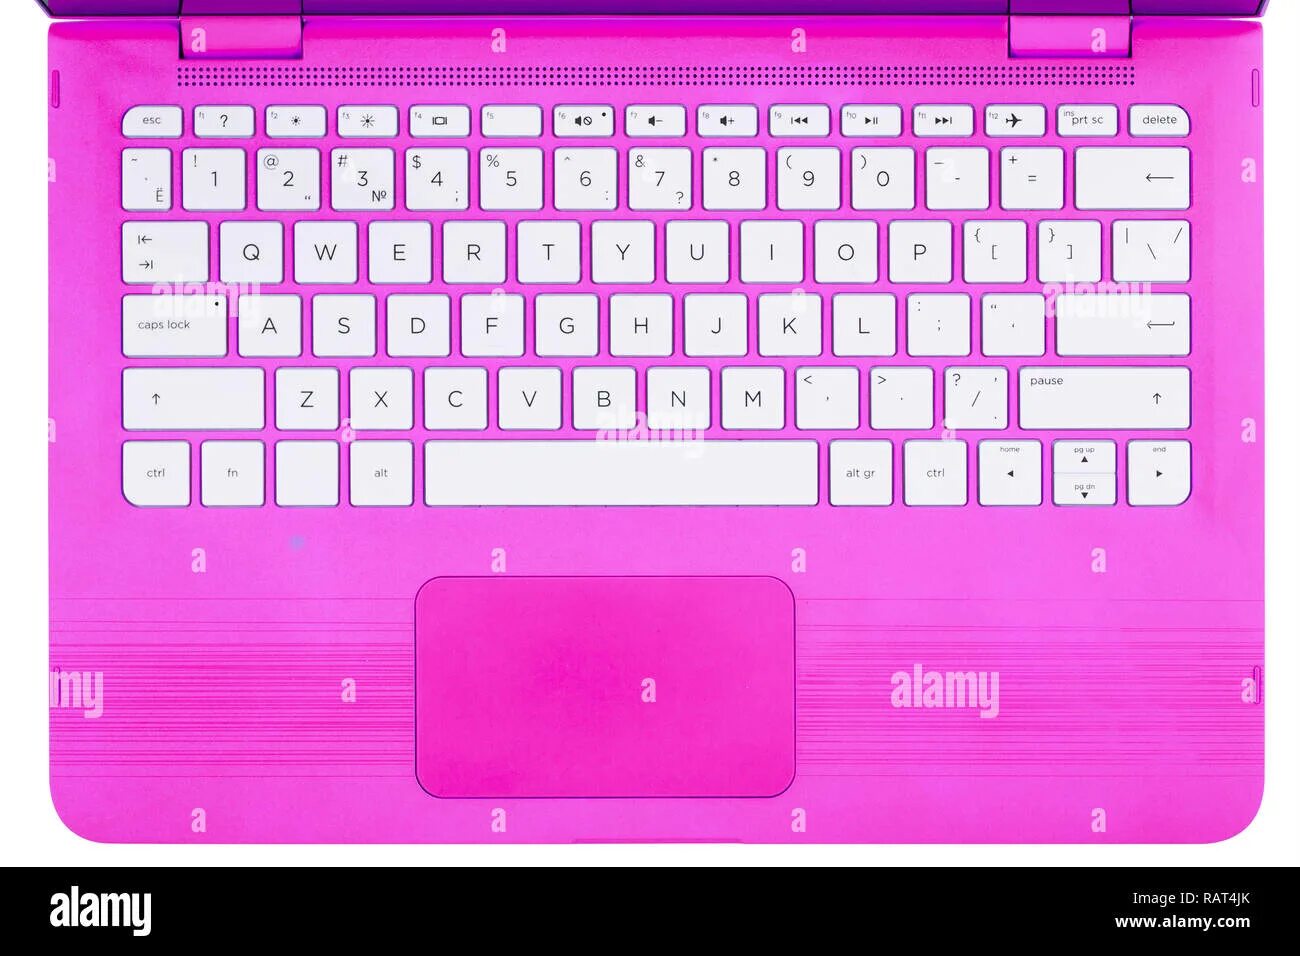 Клавиатура ноутбука. Розовая клавиатура на ноутбук. Распечатка клавиатуры ноутбука. Клавиатура для ноутбука для девочек.